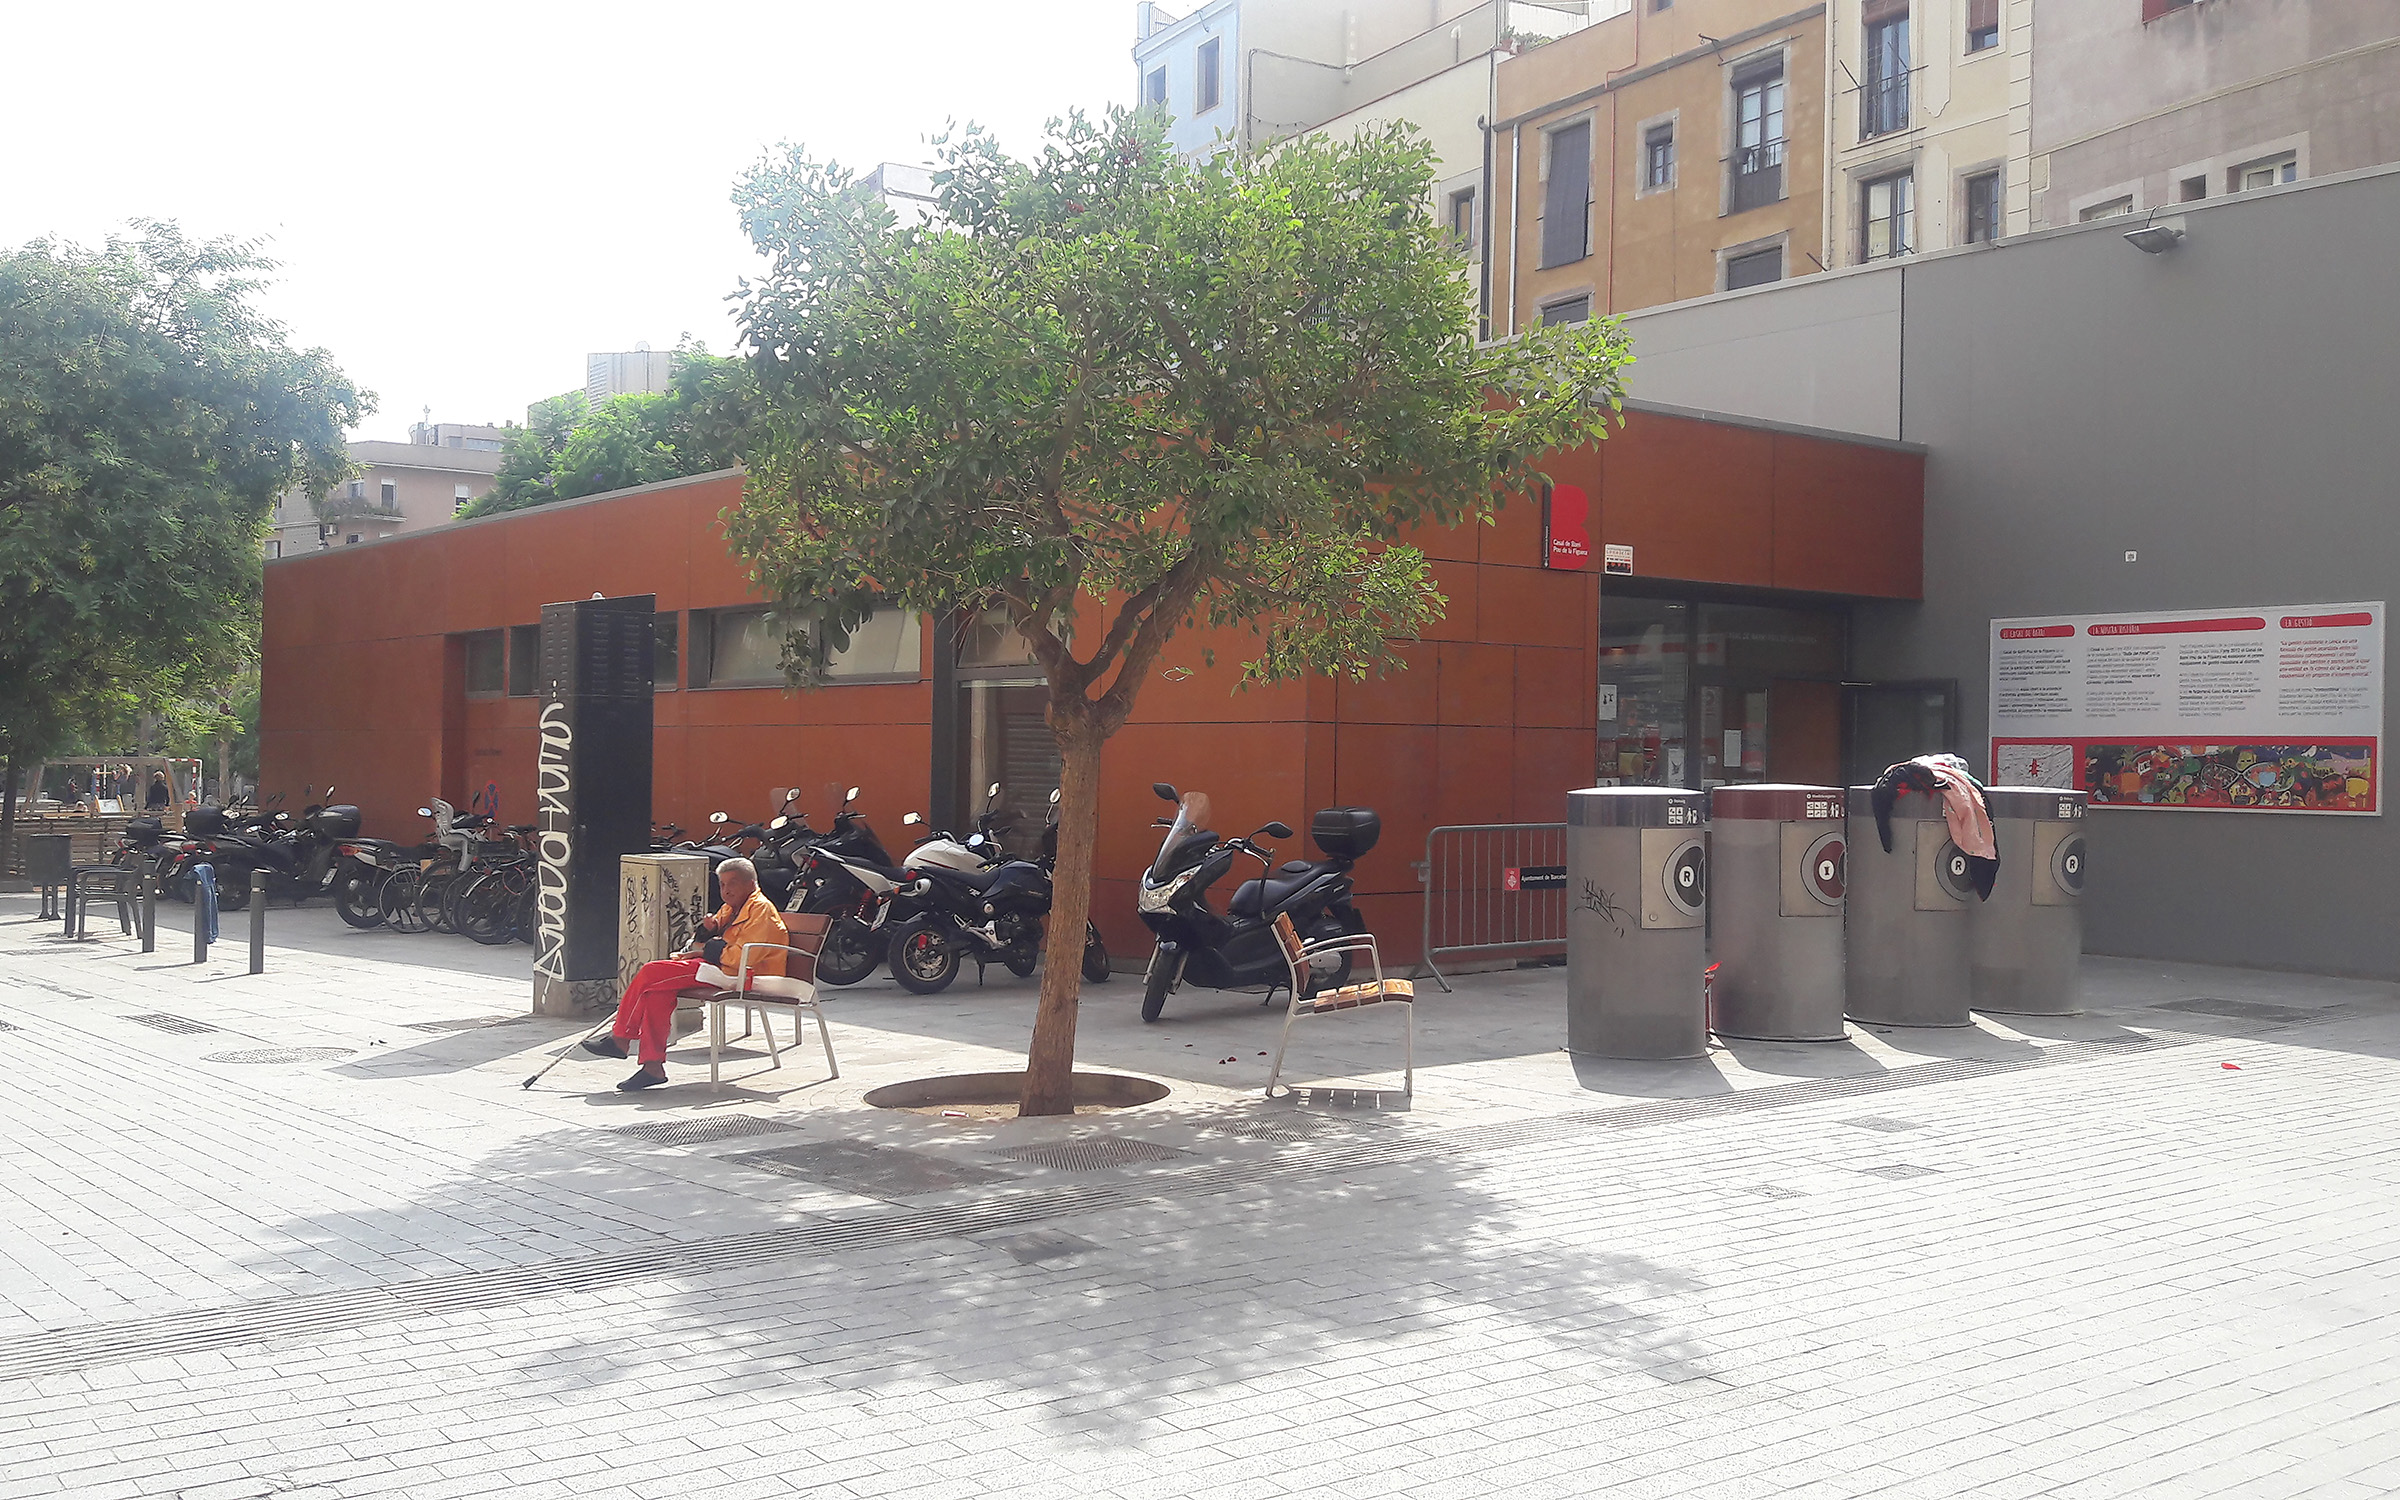 Equipamiento del Ayuntamiento de Barcelona ubicado en el distrito de Ciutat Vella. En él, se realizan diversas actividades para los habitantes del distrito